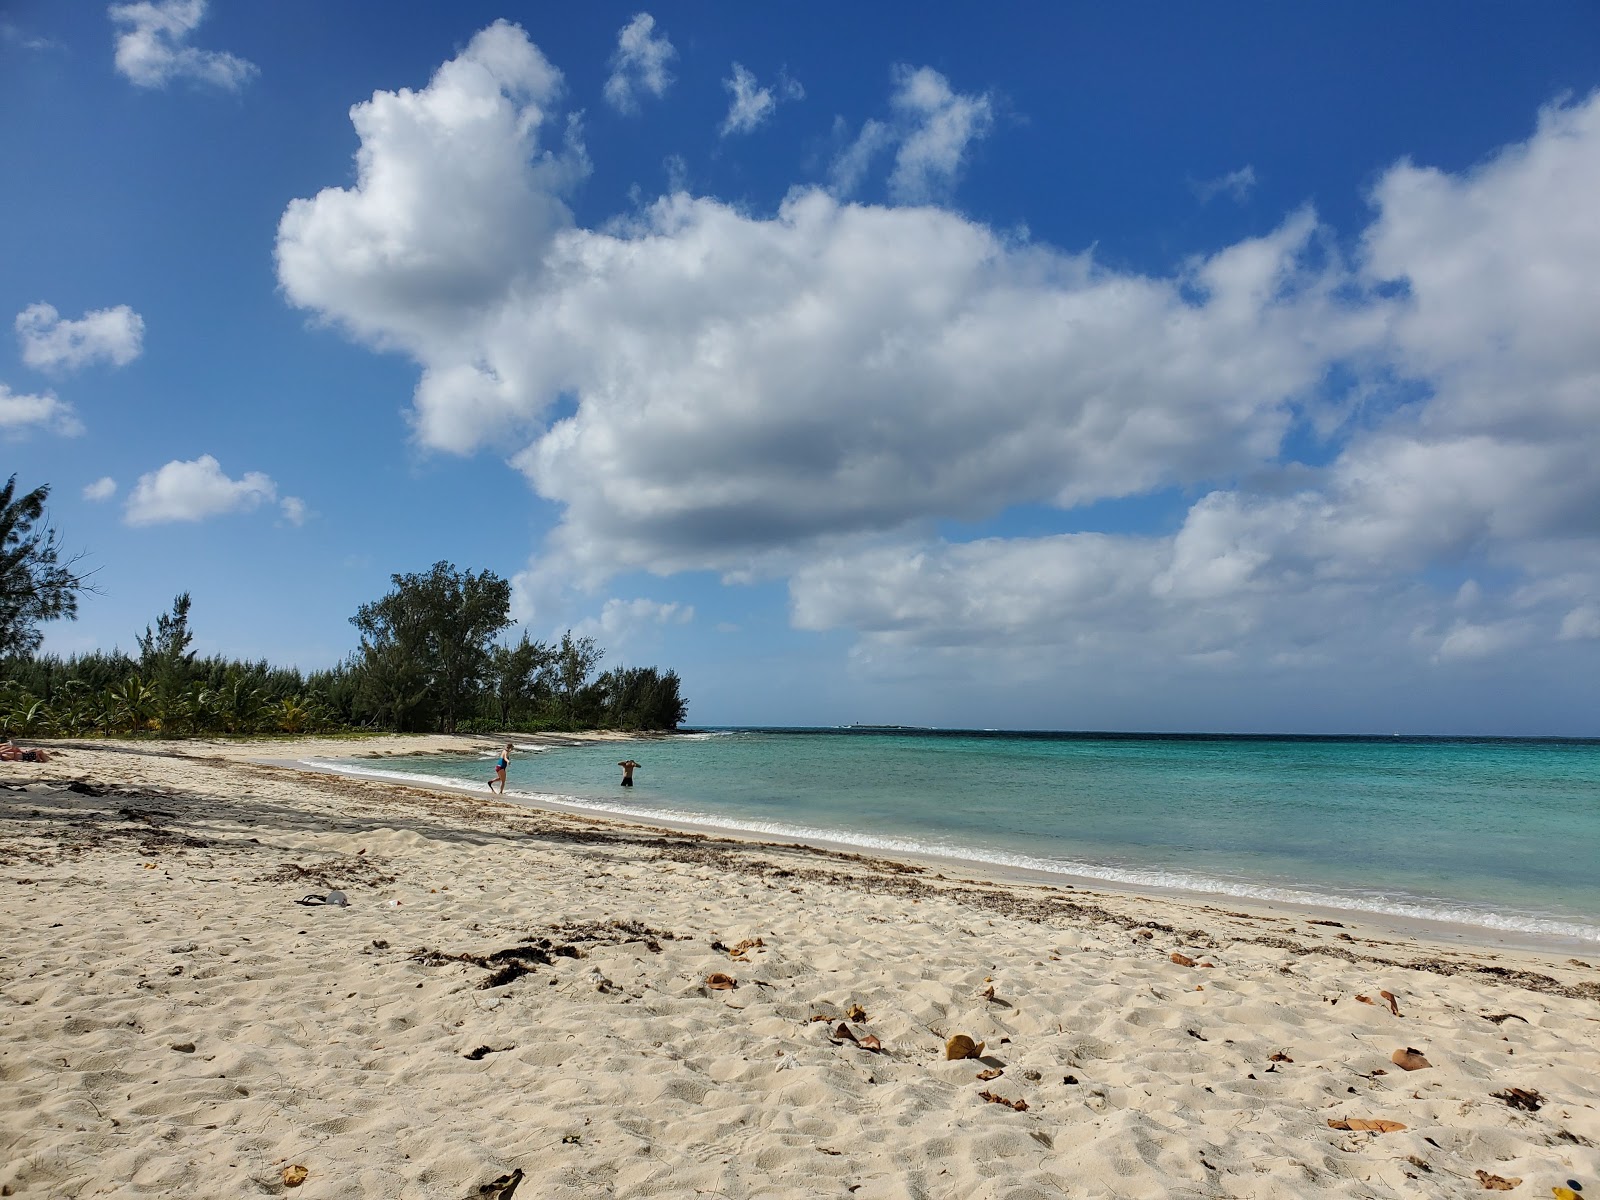 Fotografie cu Jaw's beach - locul popular printre cunoscătorii de relaxare